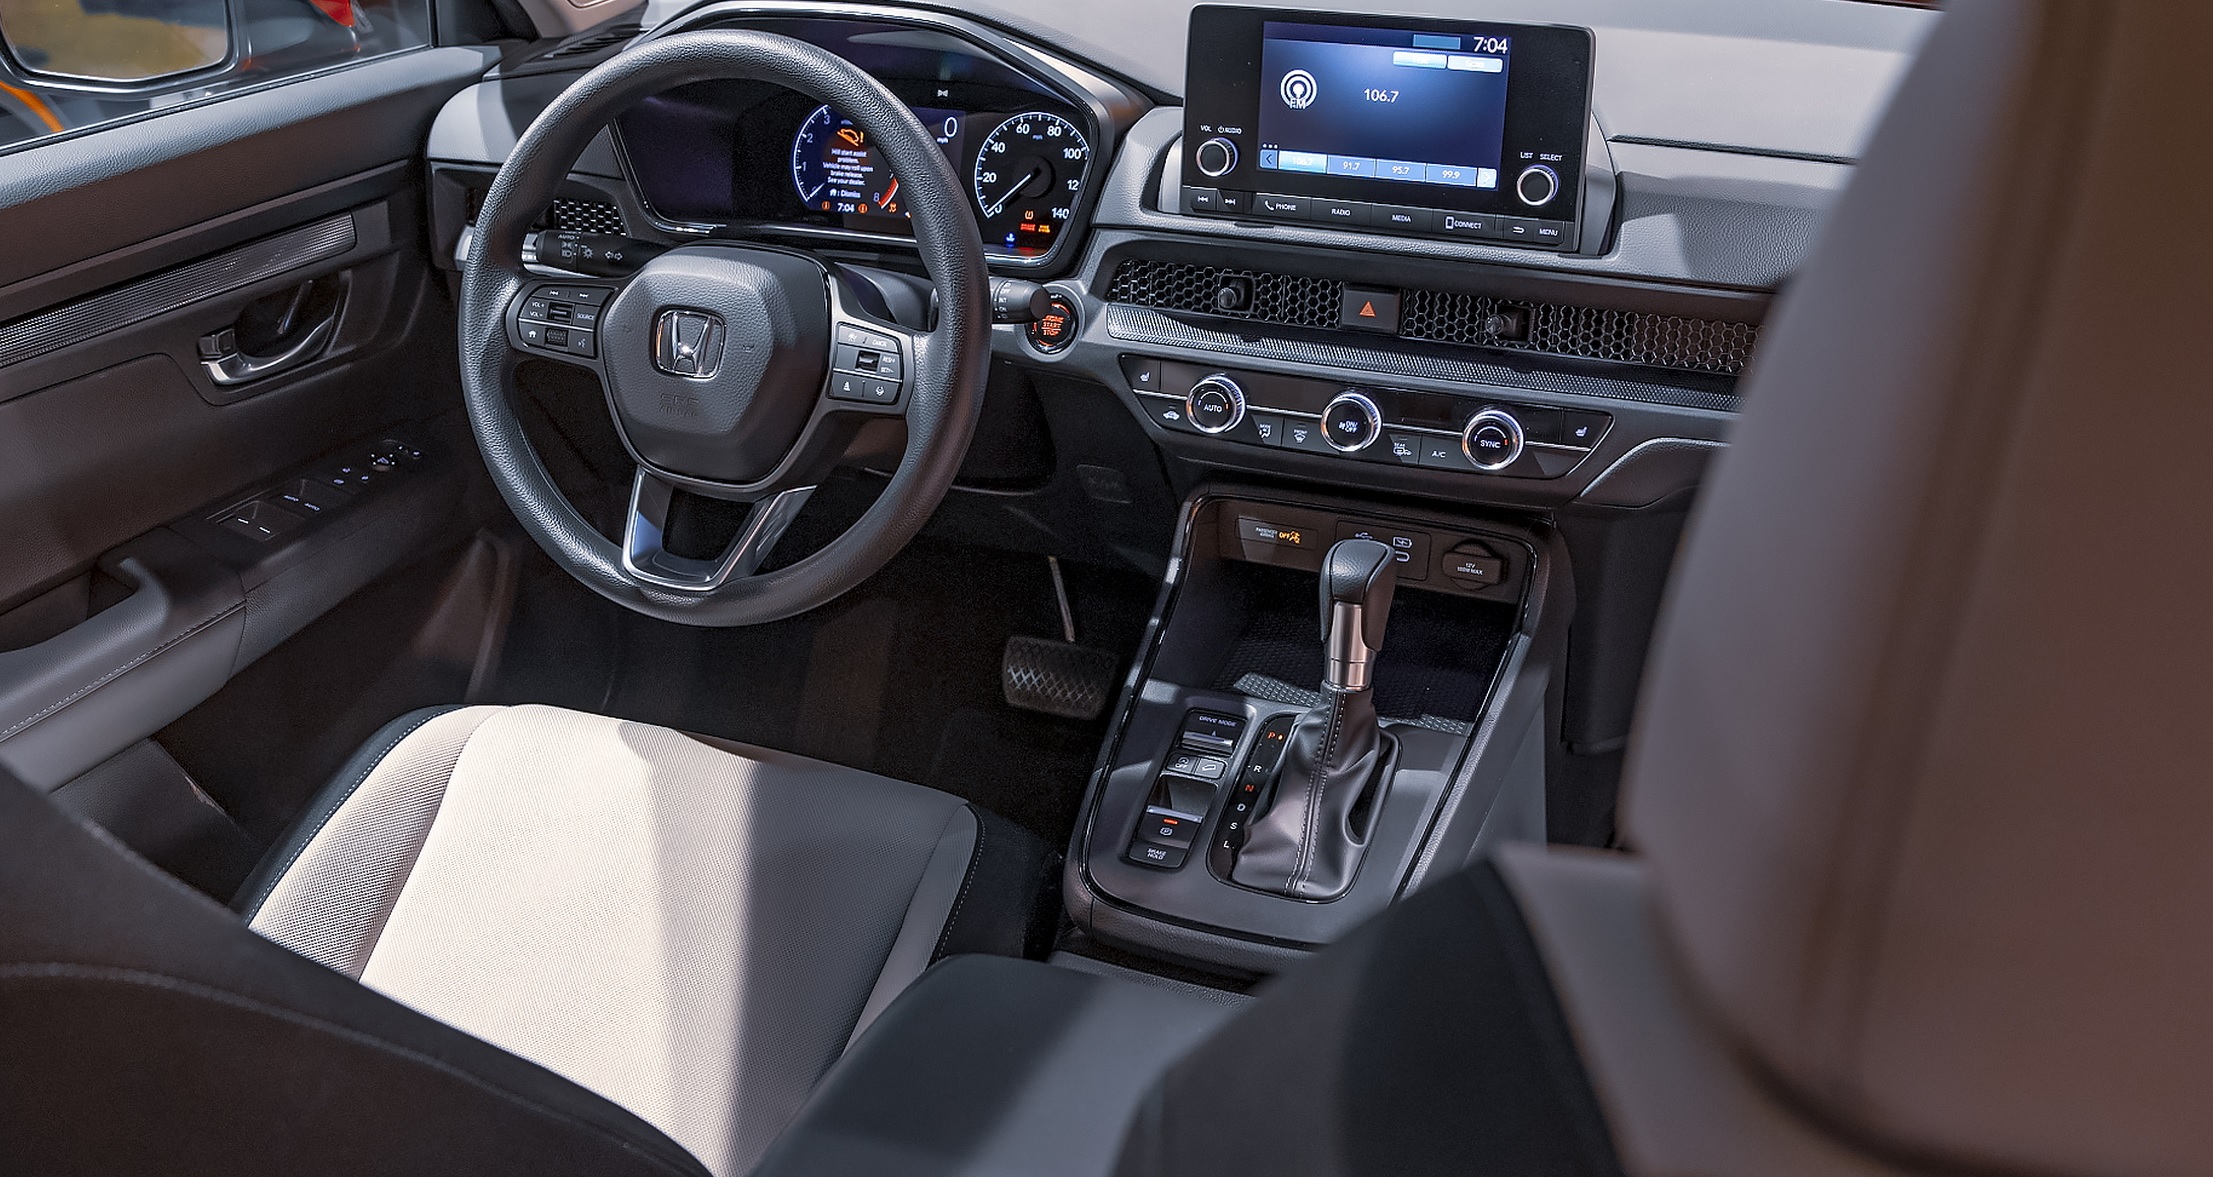 EX получает 18-дюймовые колеса, светодиодные фары, семидюймовый сенсорный экран с Apple CarPlay и Android Auto, подогрев передних сидений, несколько цифровых дисплеев на приборной панели, двухзонный автоматический климат-контроль и люк с электроприво